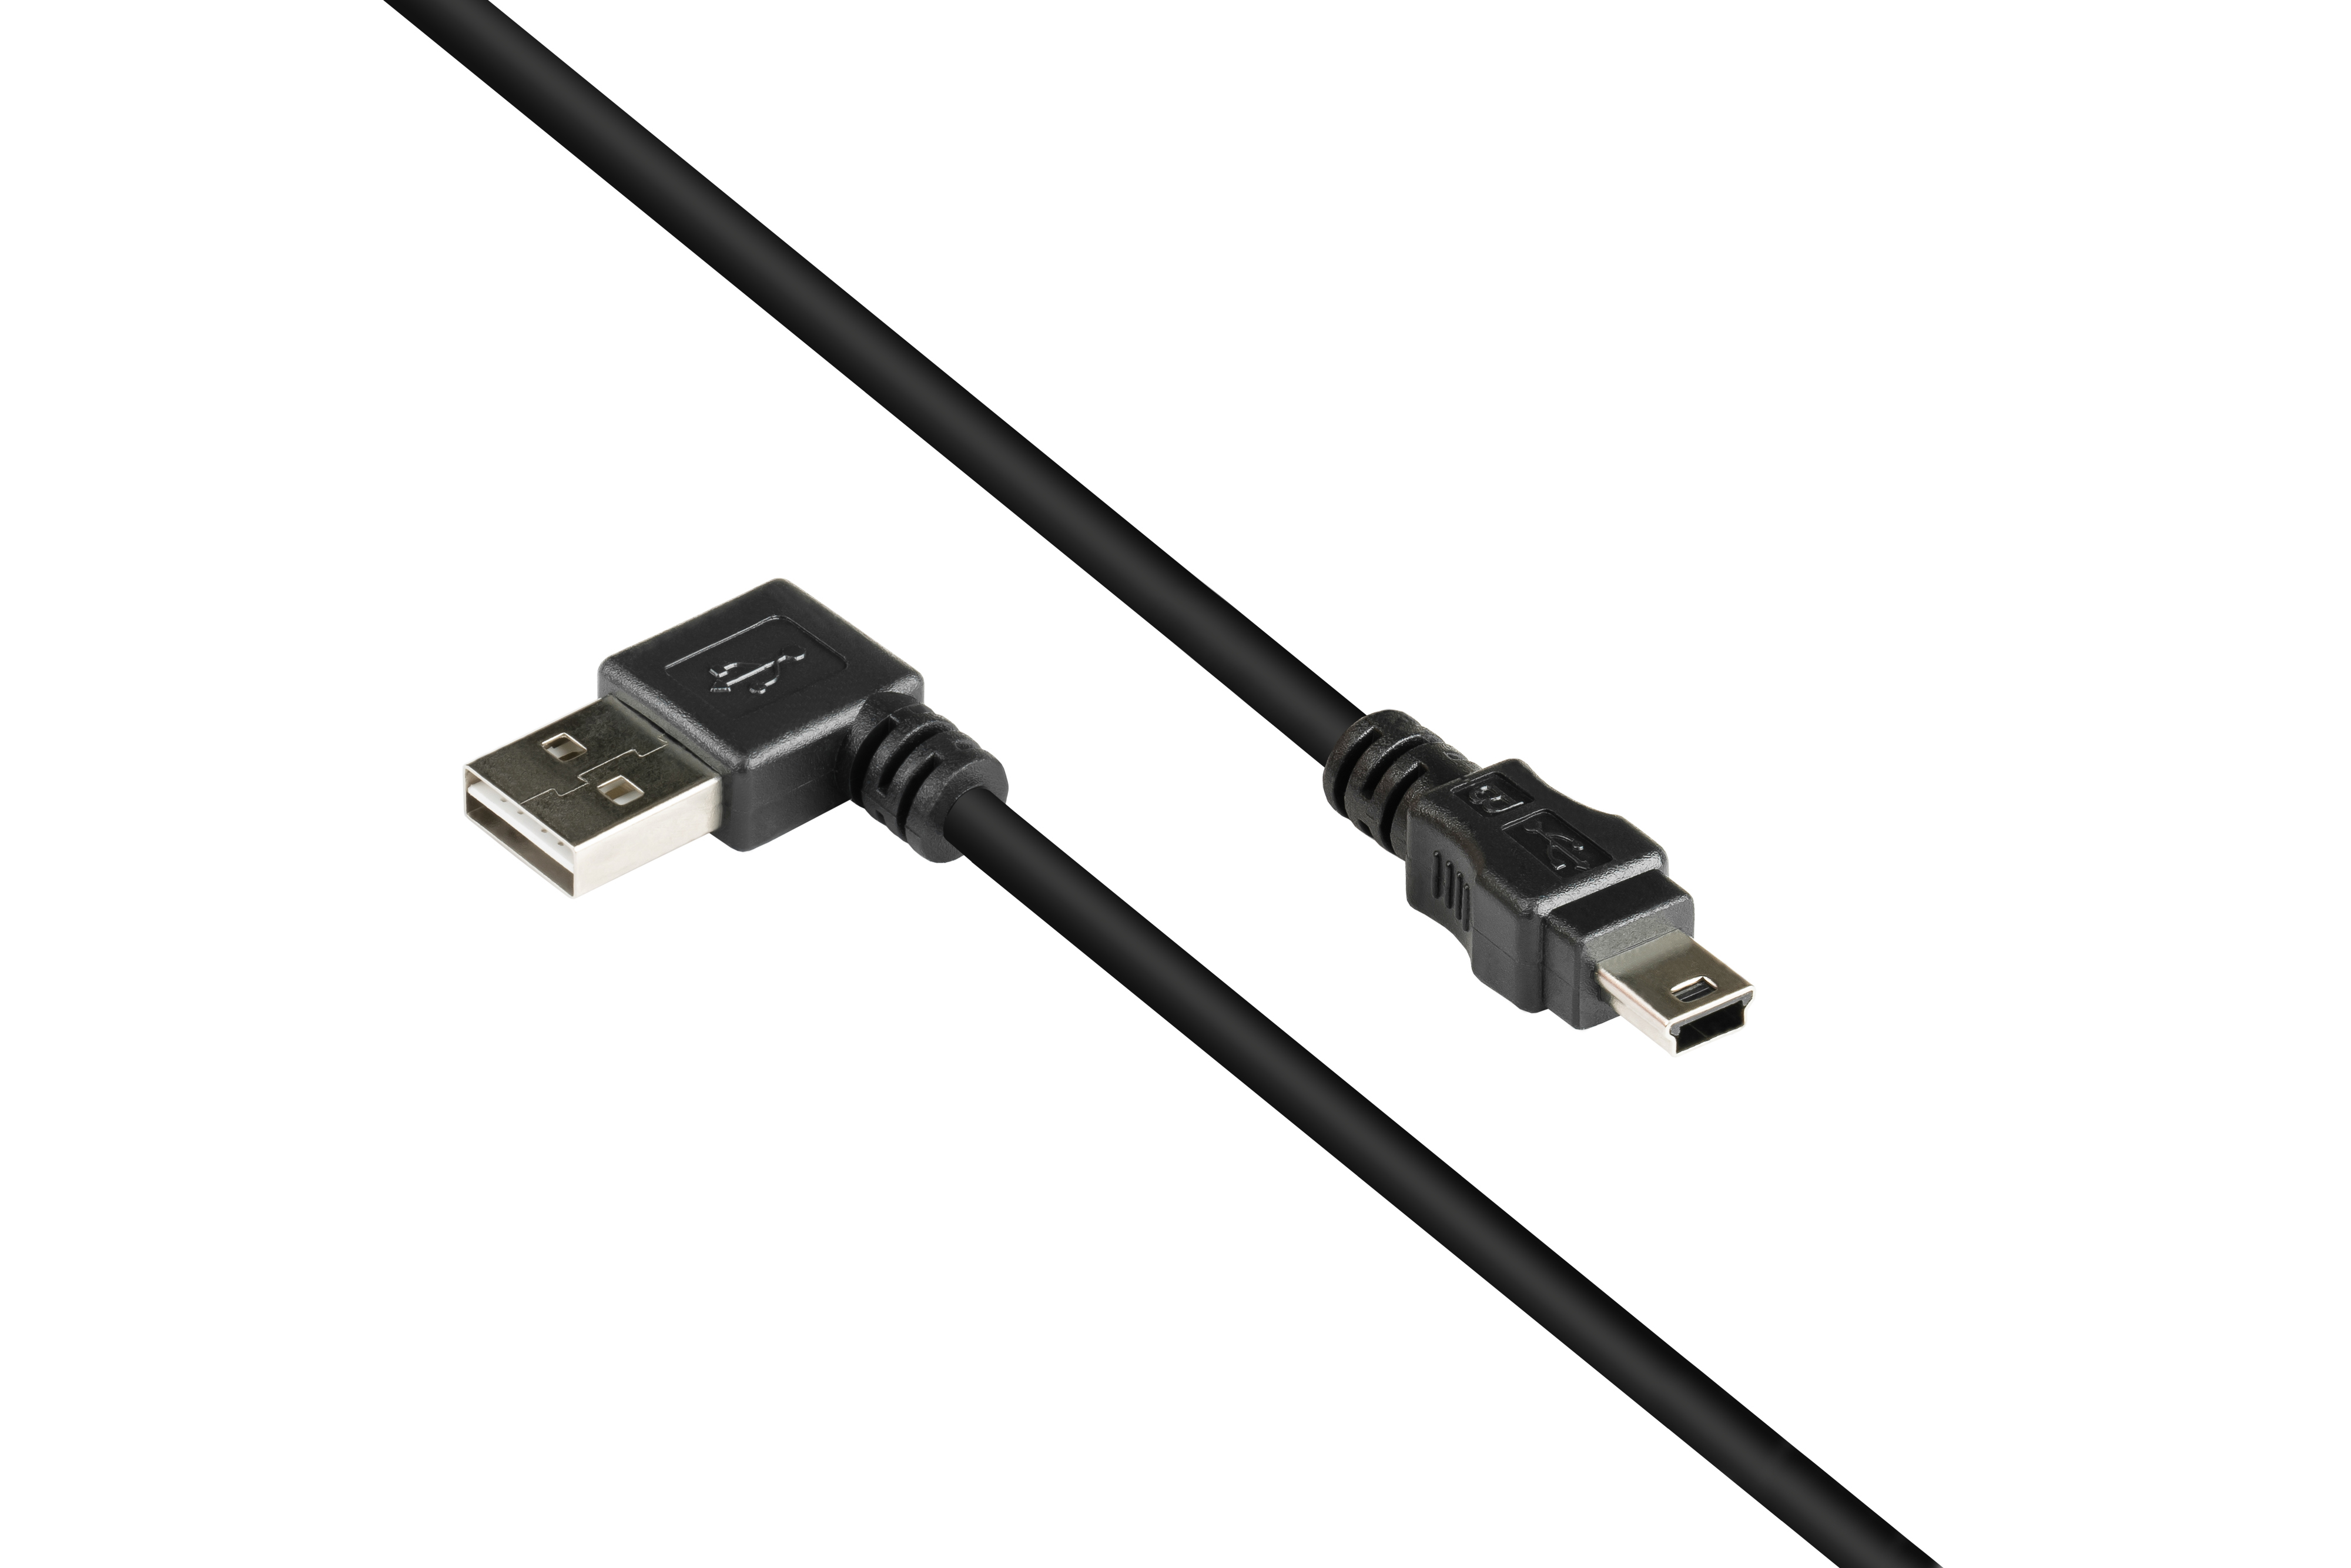 KABELMEISTER USB 2.0 EASY Stecker Mini Anschlusskabel Stecker, A B gewinkelt, schwarz an